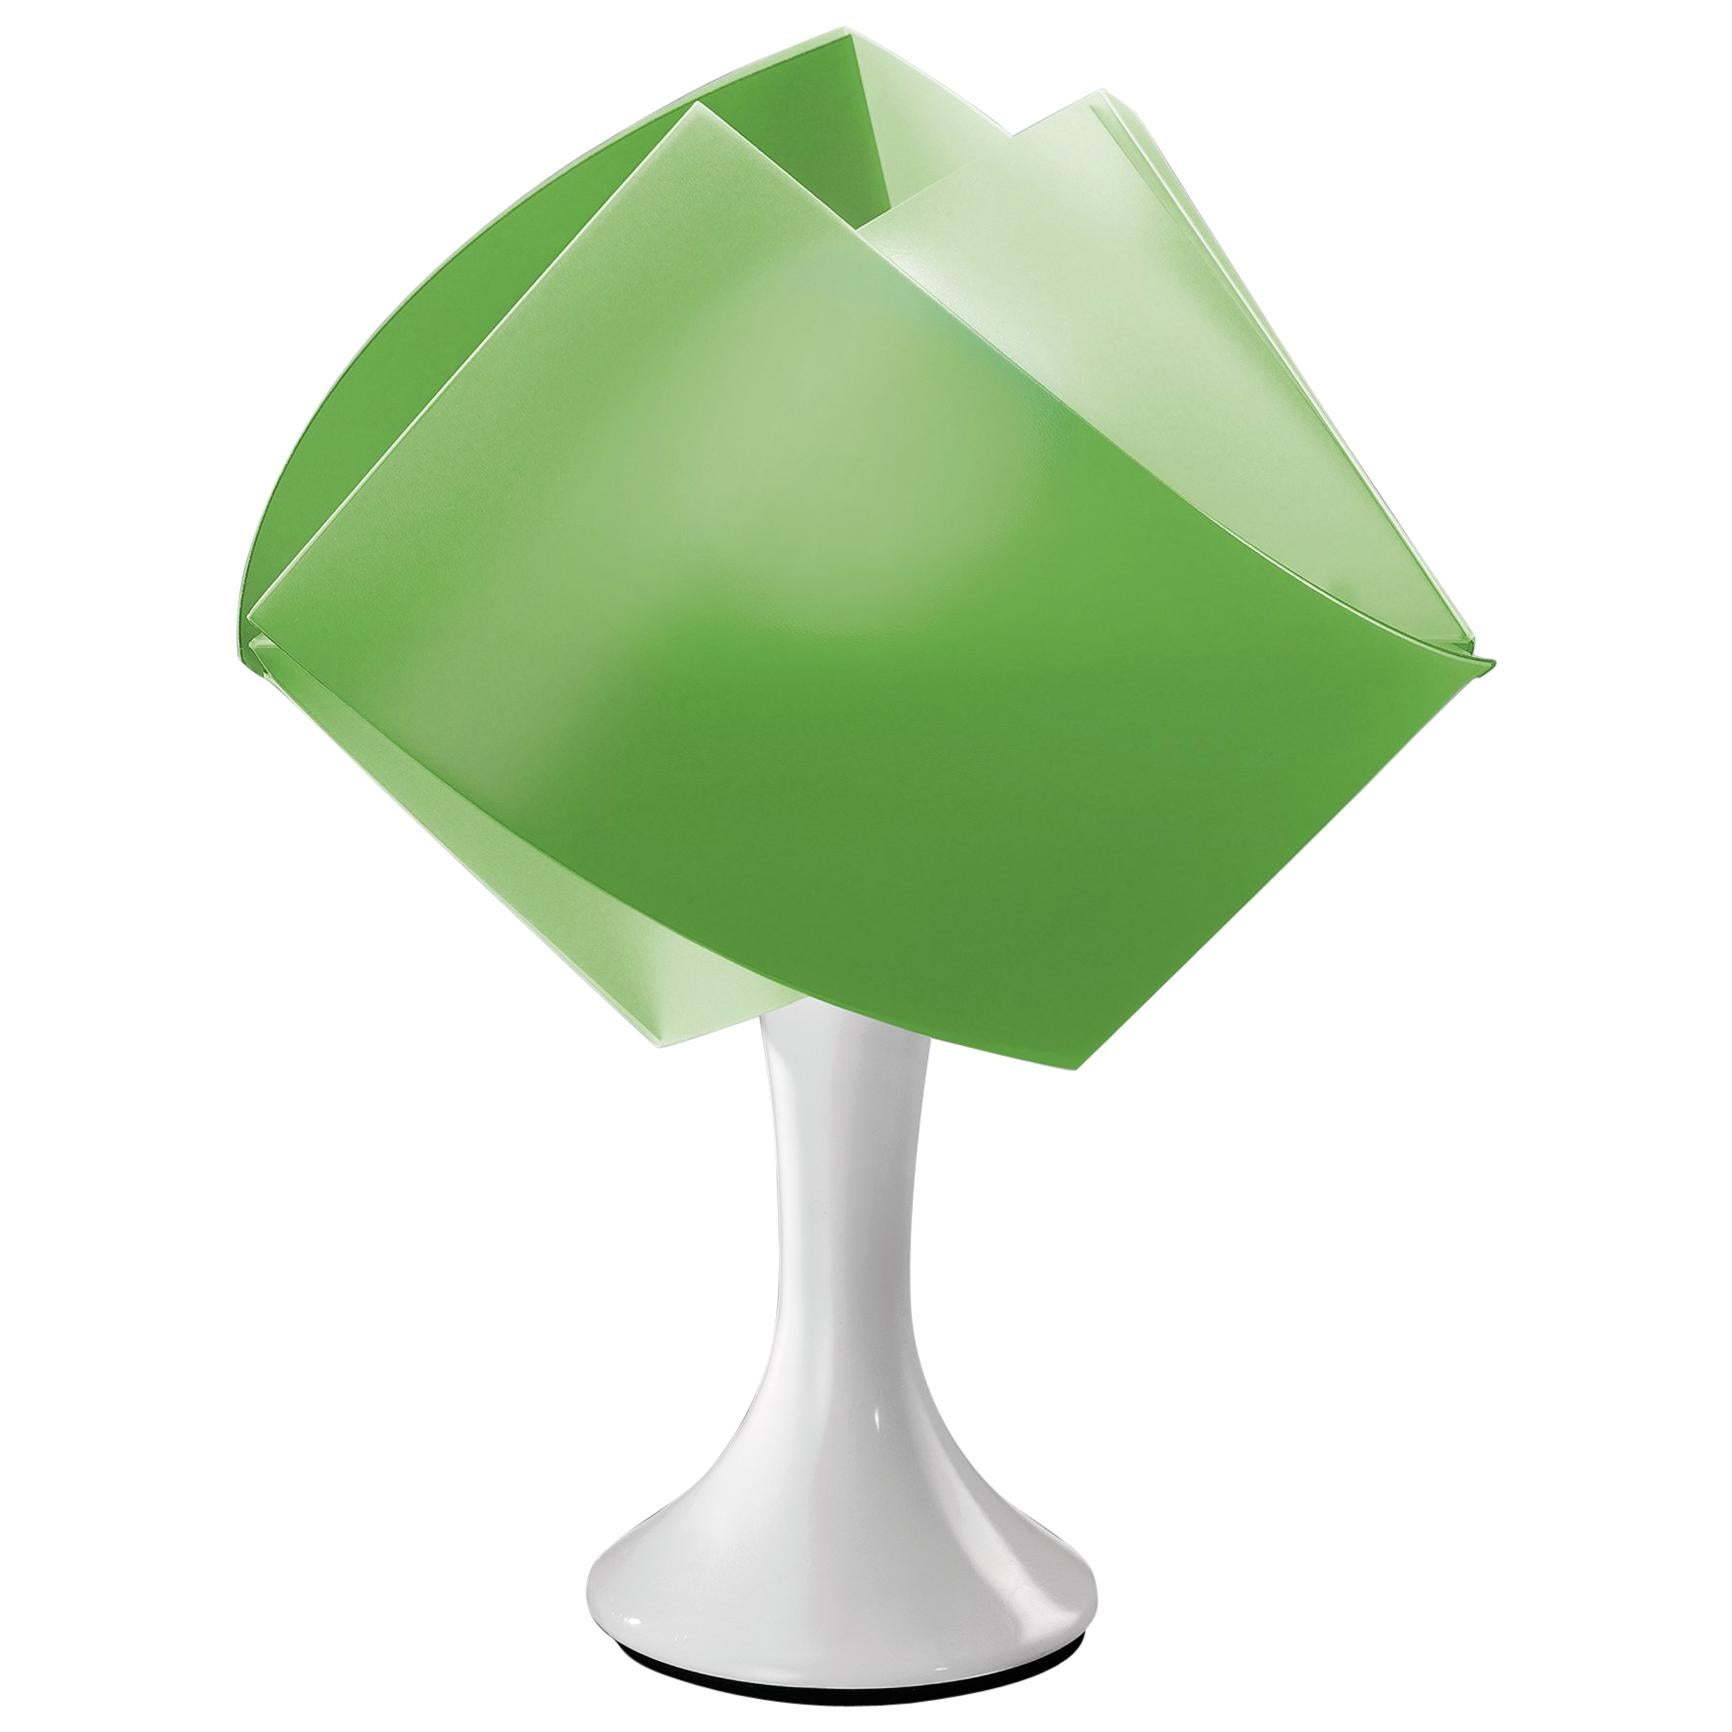 SLAMP Gemmy Table Light in Green by Spalletta, Croce, Ragnisco & Wijffels For Sale